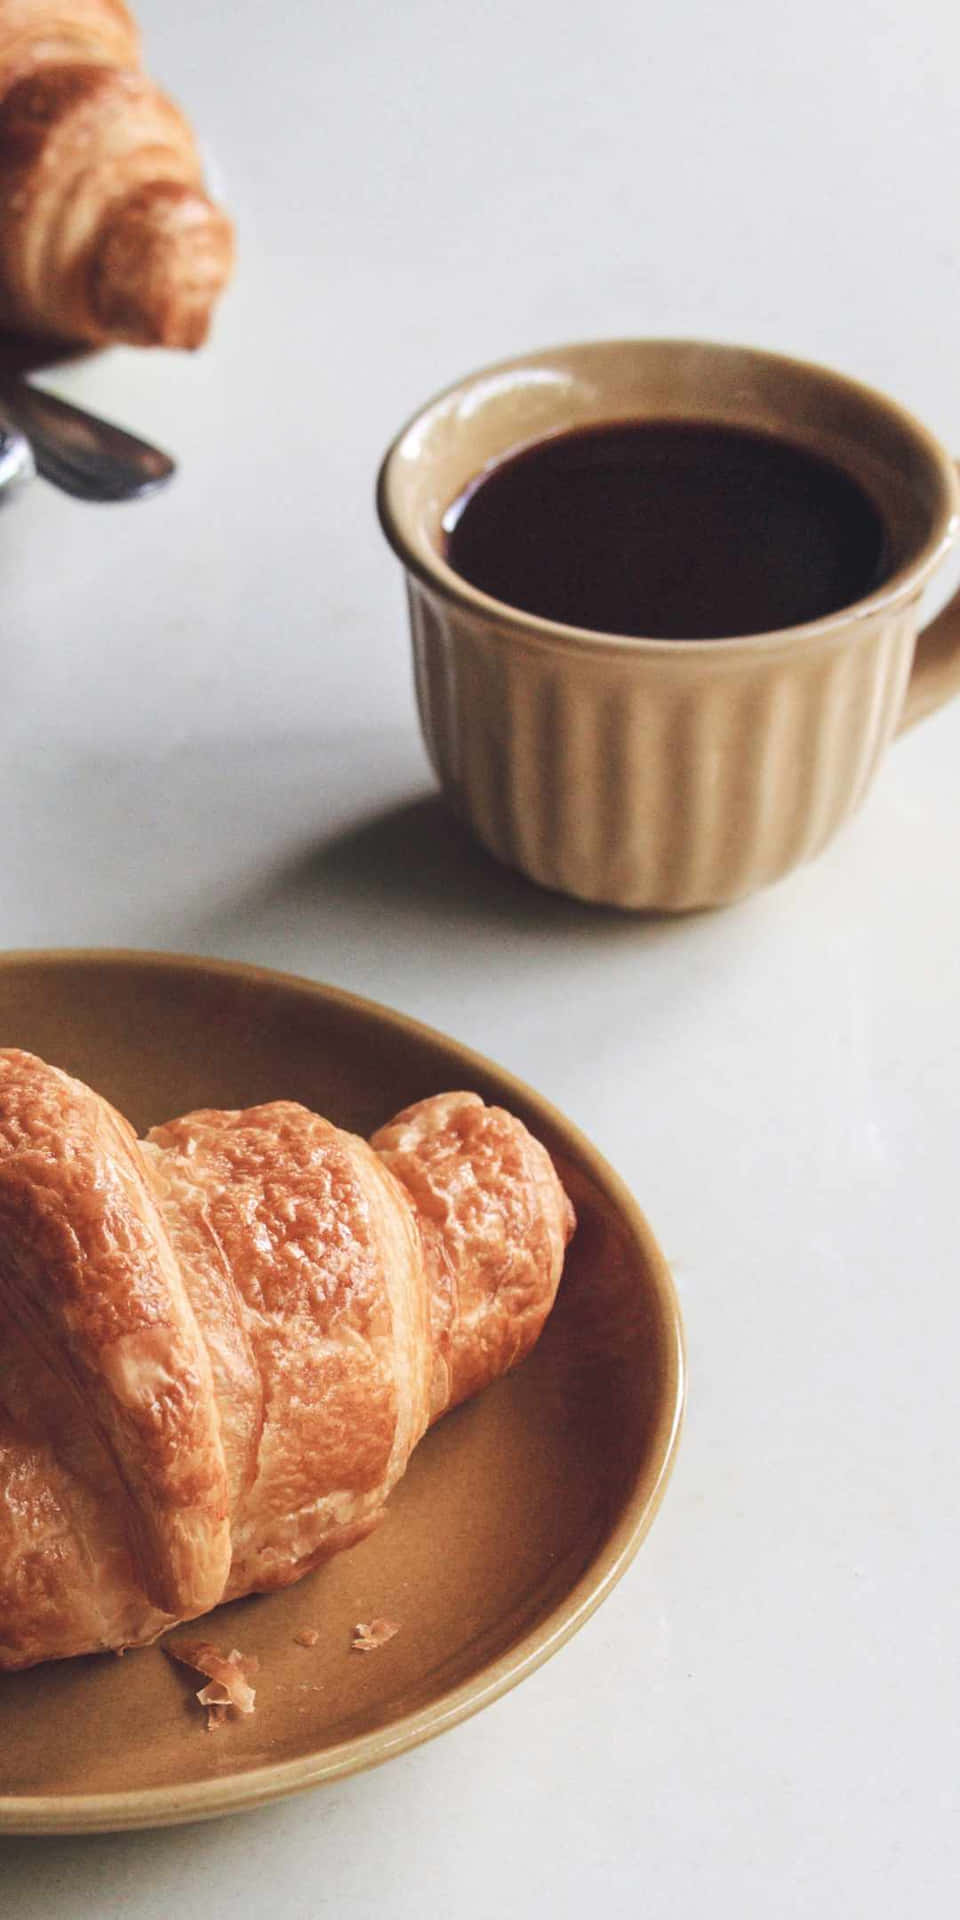 Fondode Pantalla De Pixel 3 - Desayuno Con Pasteles Y Croissant